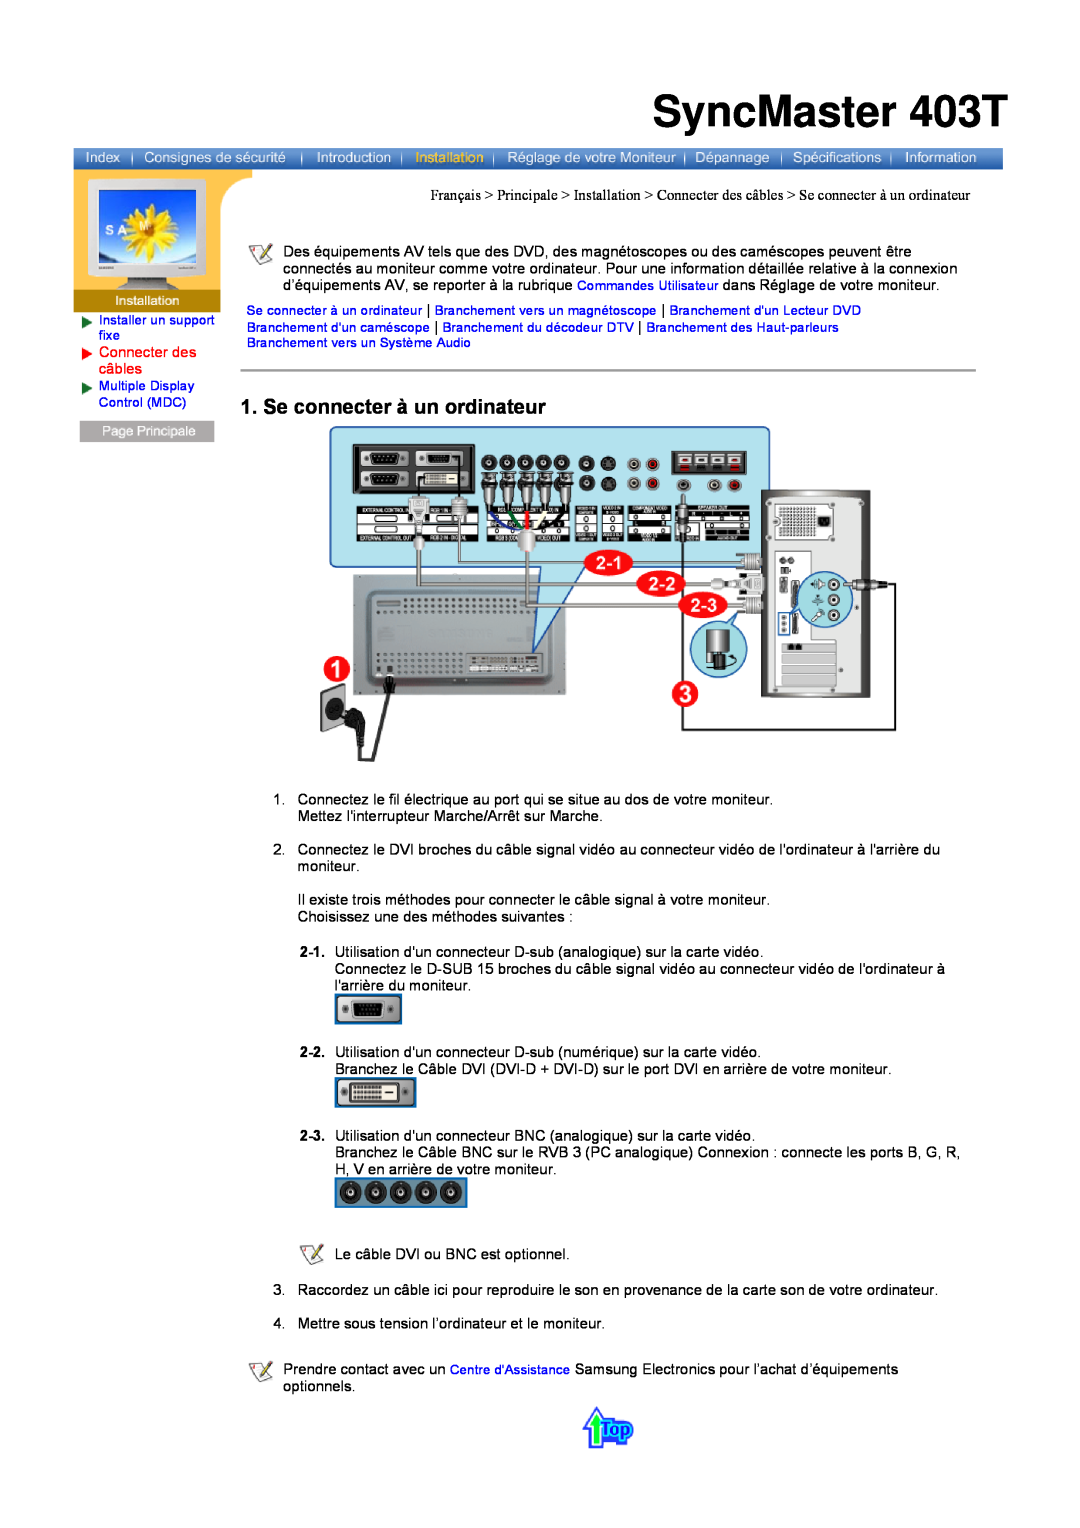 Samsung CK40PSNBF/EDC, CK40PSNB/EDC, CK40PSSS/EDC manual Se connecter à un ordinateur, SyncMaster 403T, Connecter des câbles 